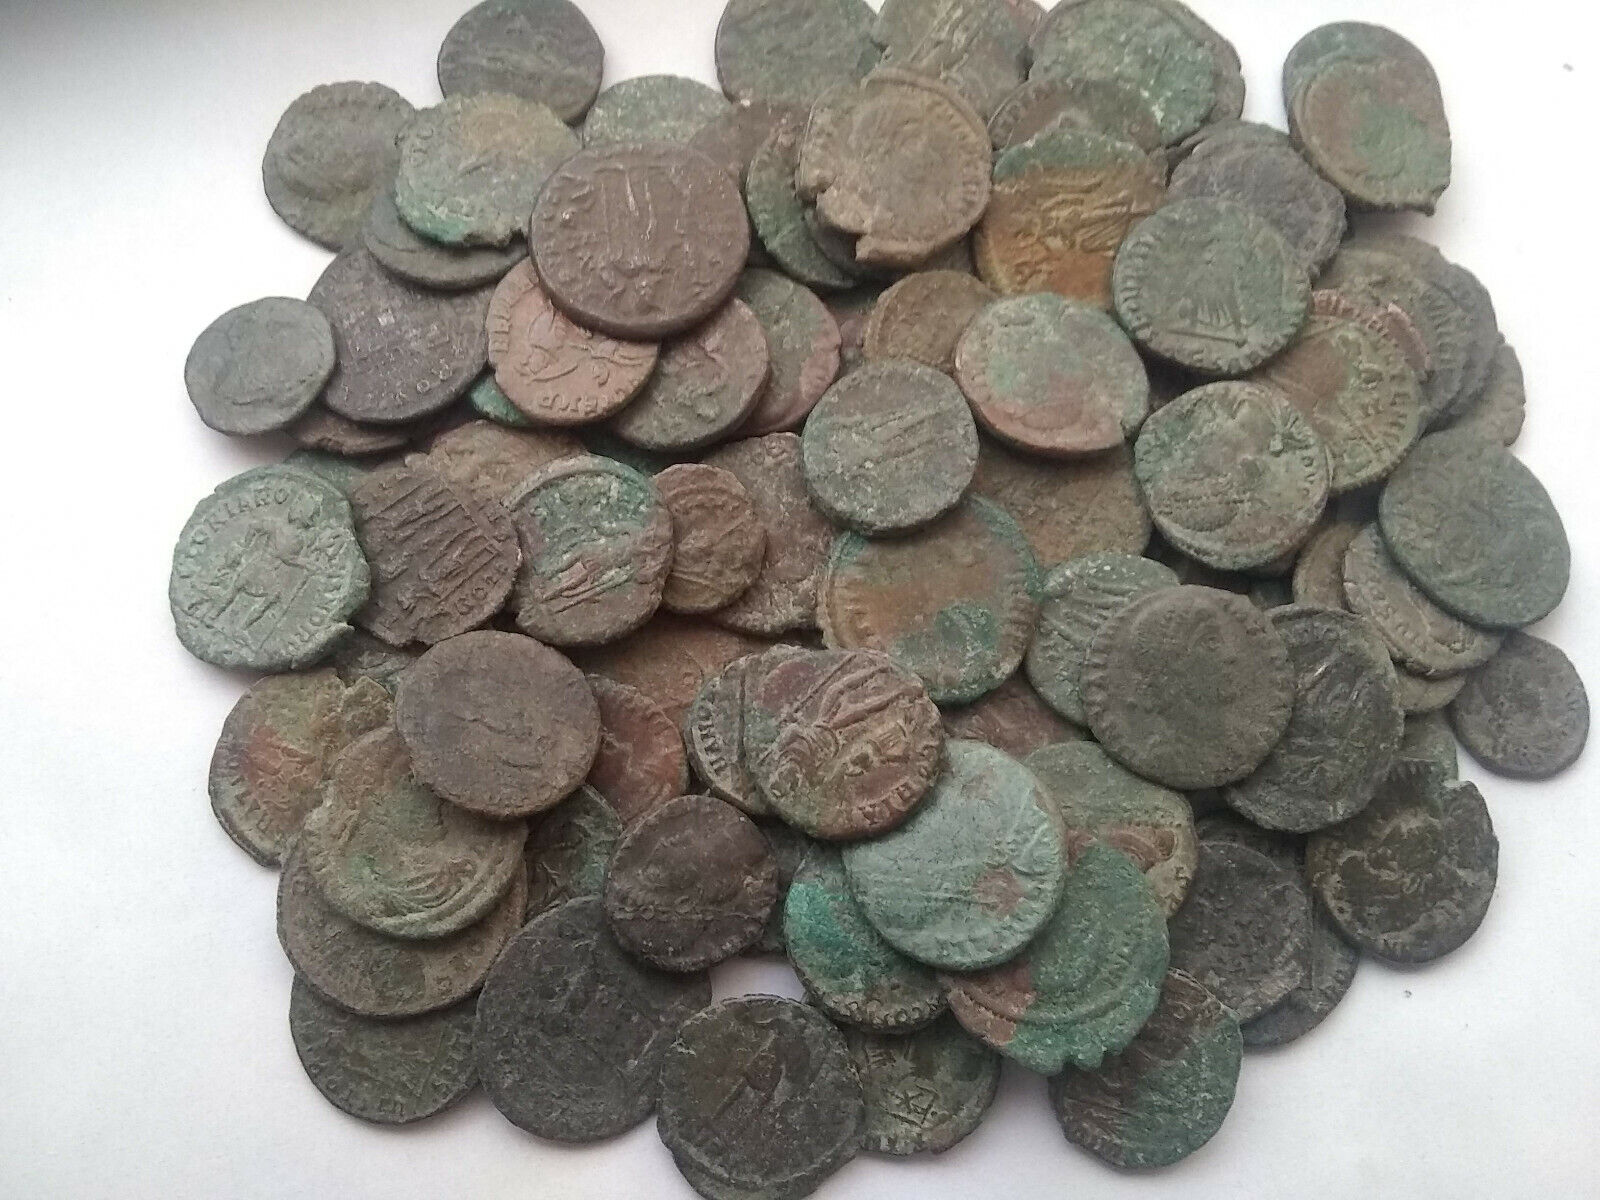 Lot of 2 original Ancient Roman imperial coins Constantine, Valens, Constantius Без бренда - фотография #3